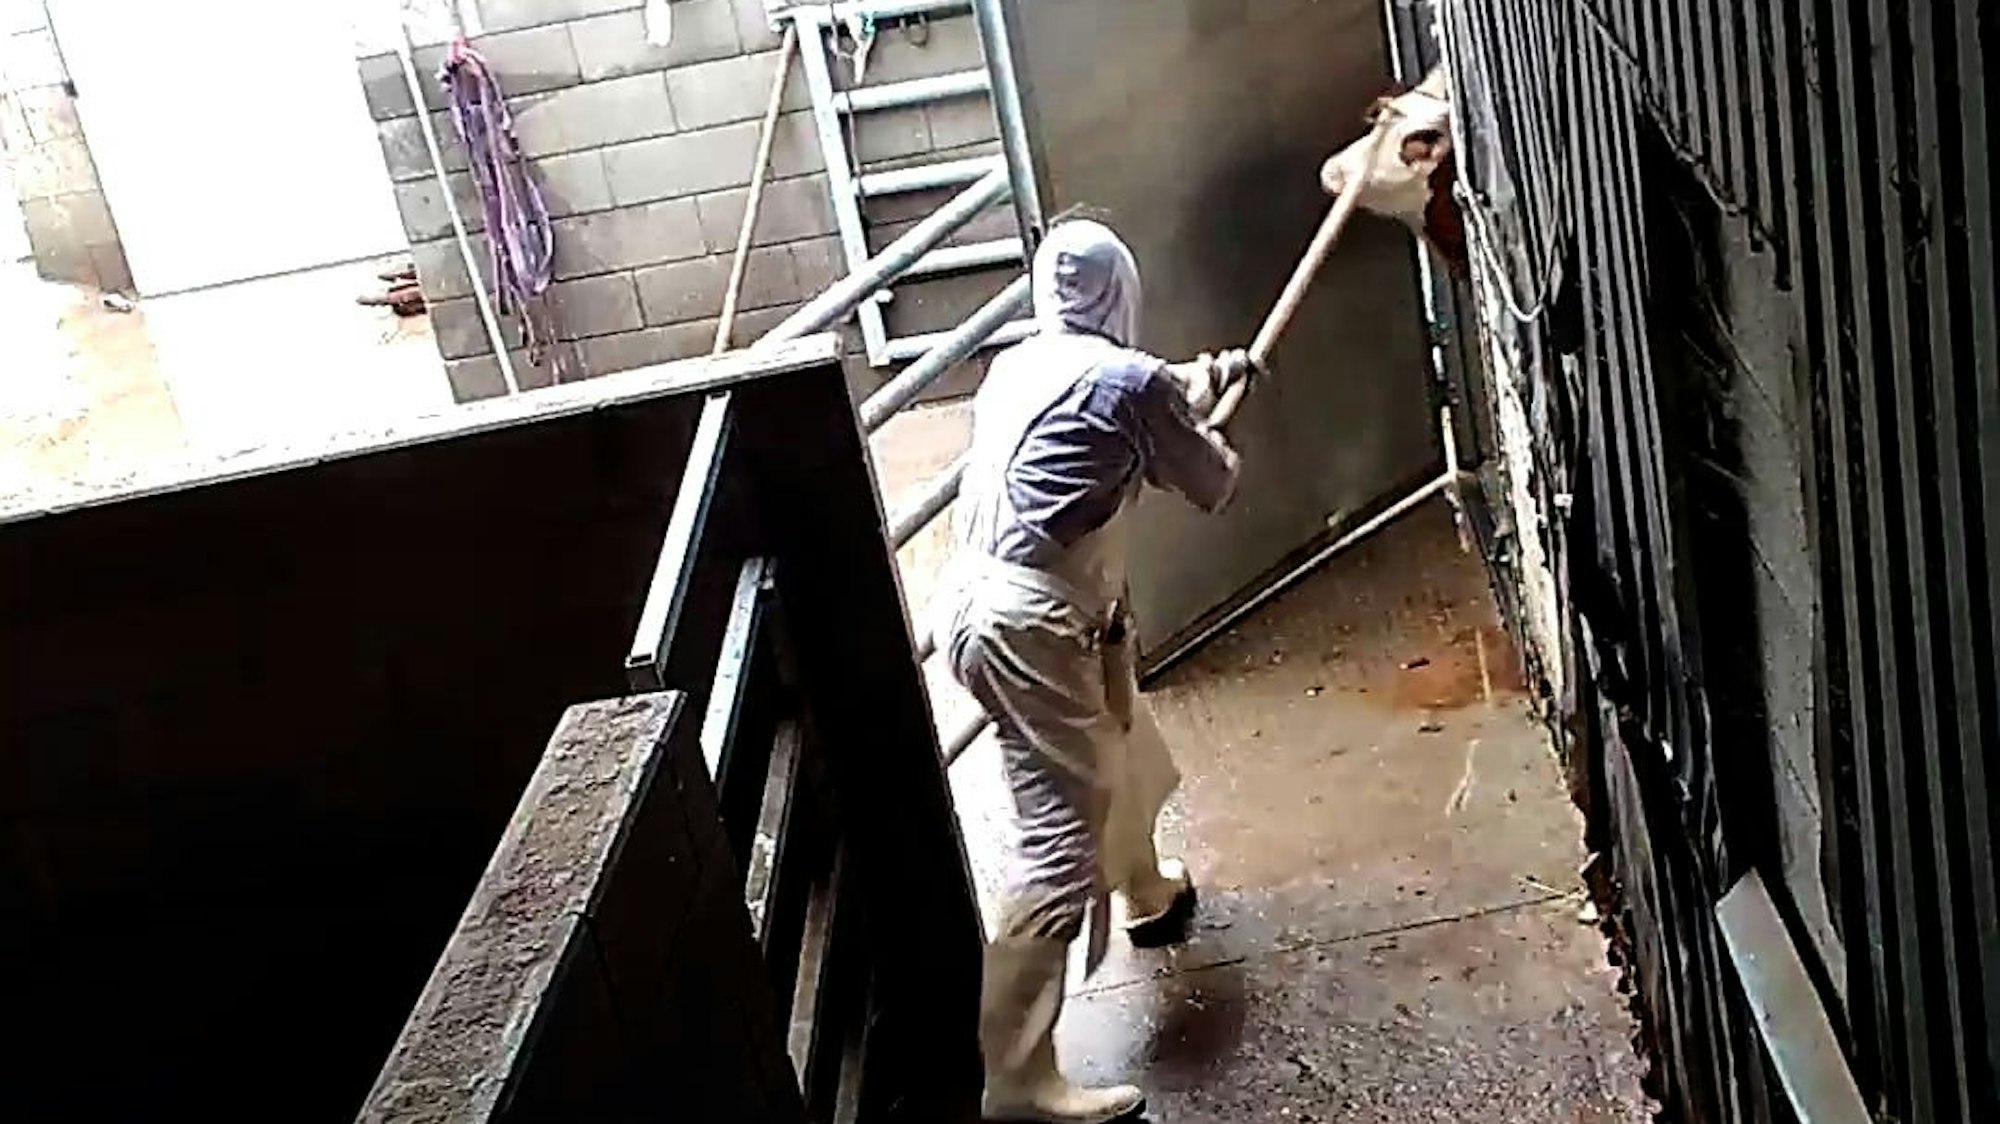 Eine Aufnahme aus einer versteckten Videokamera. Mit grober Gewalt zieht ein Mitarbeiter des Schlachthofs ein Rind in die Schlachthalle.